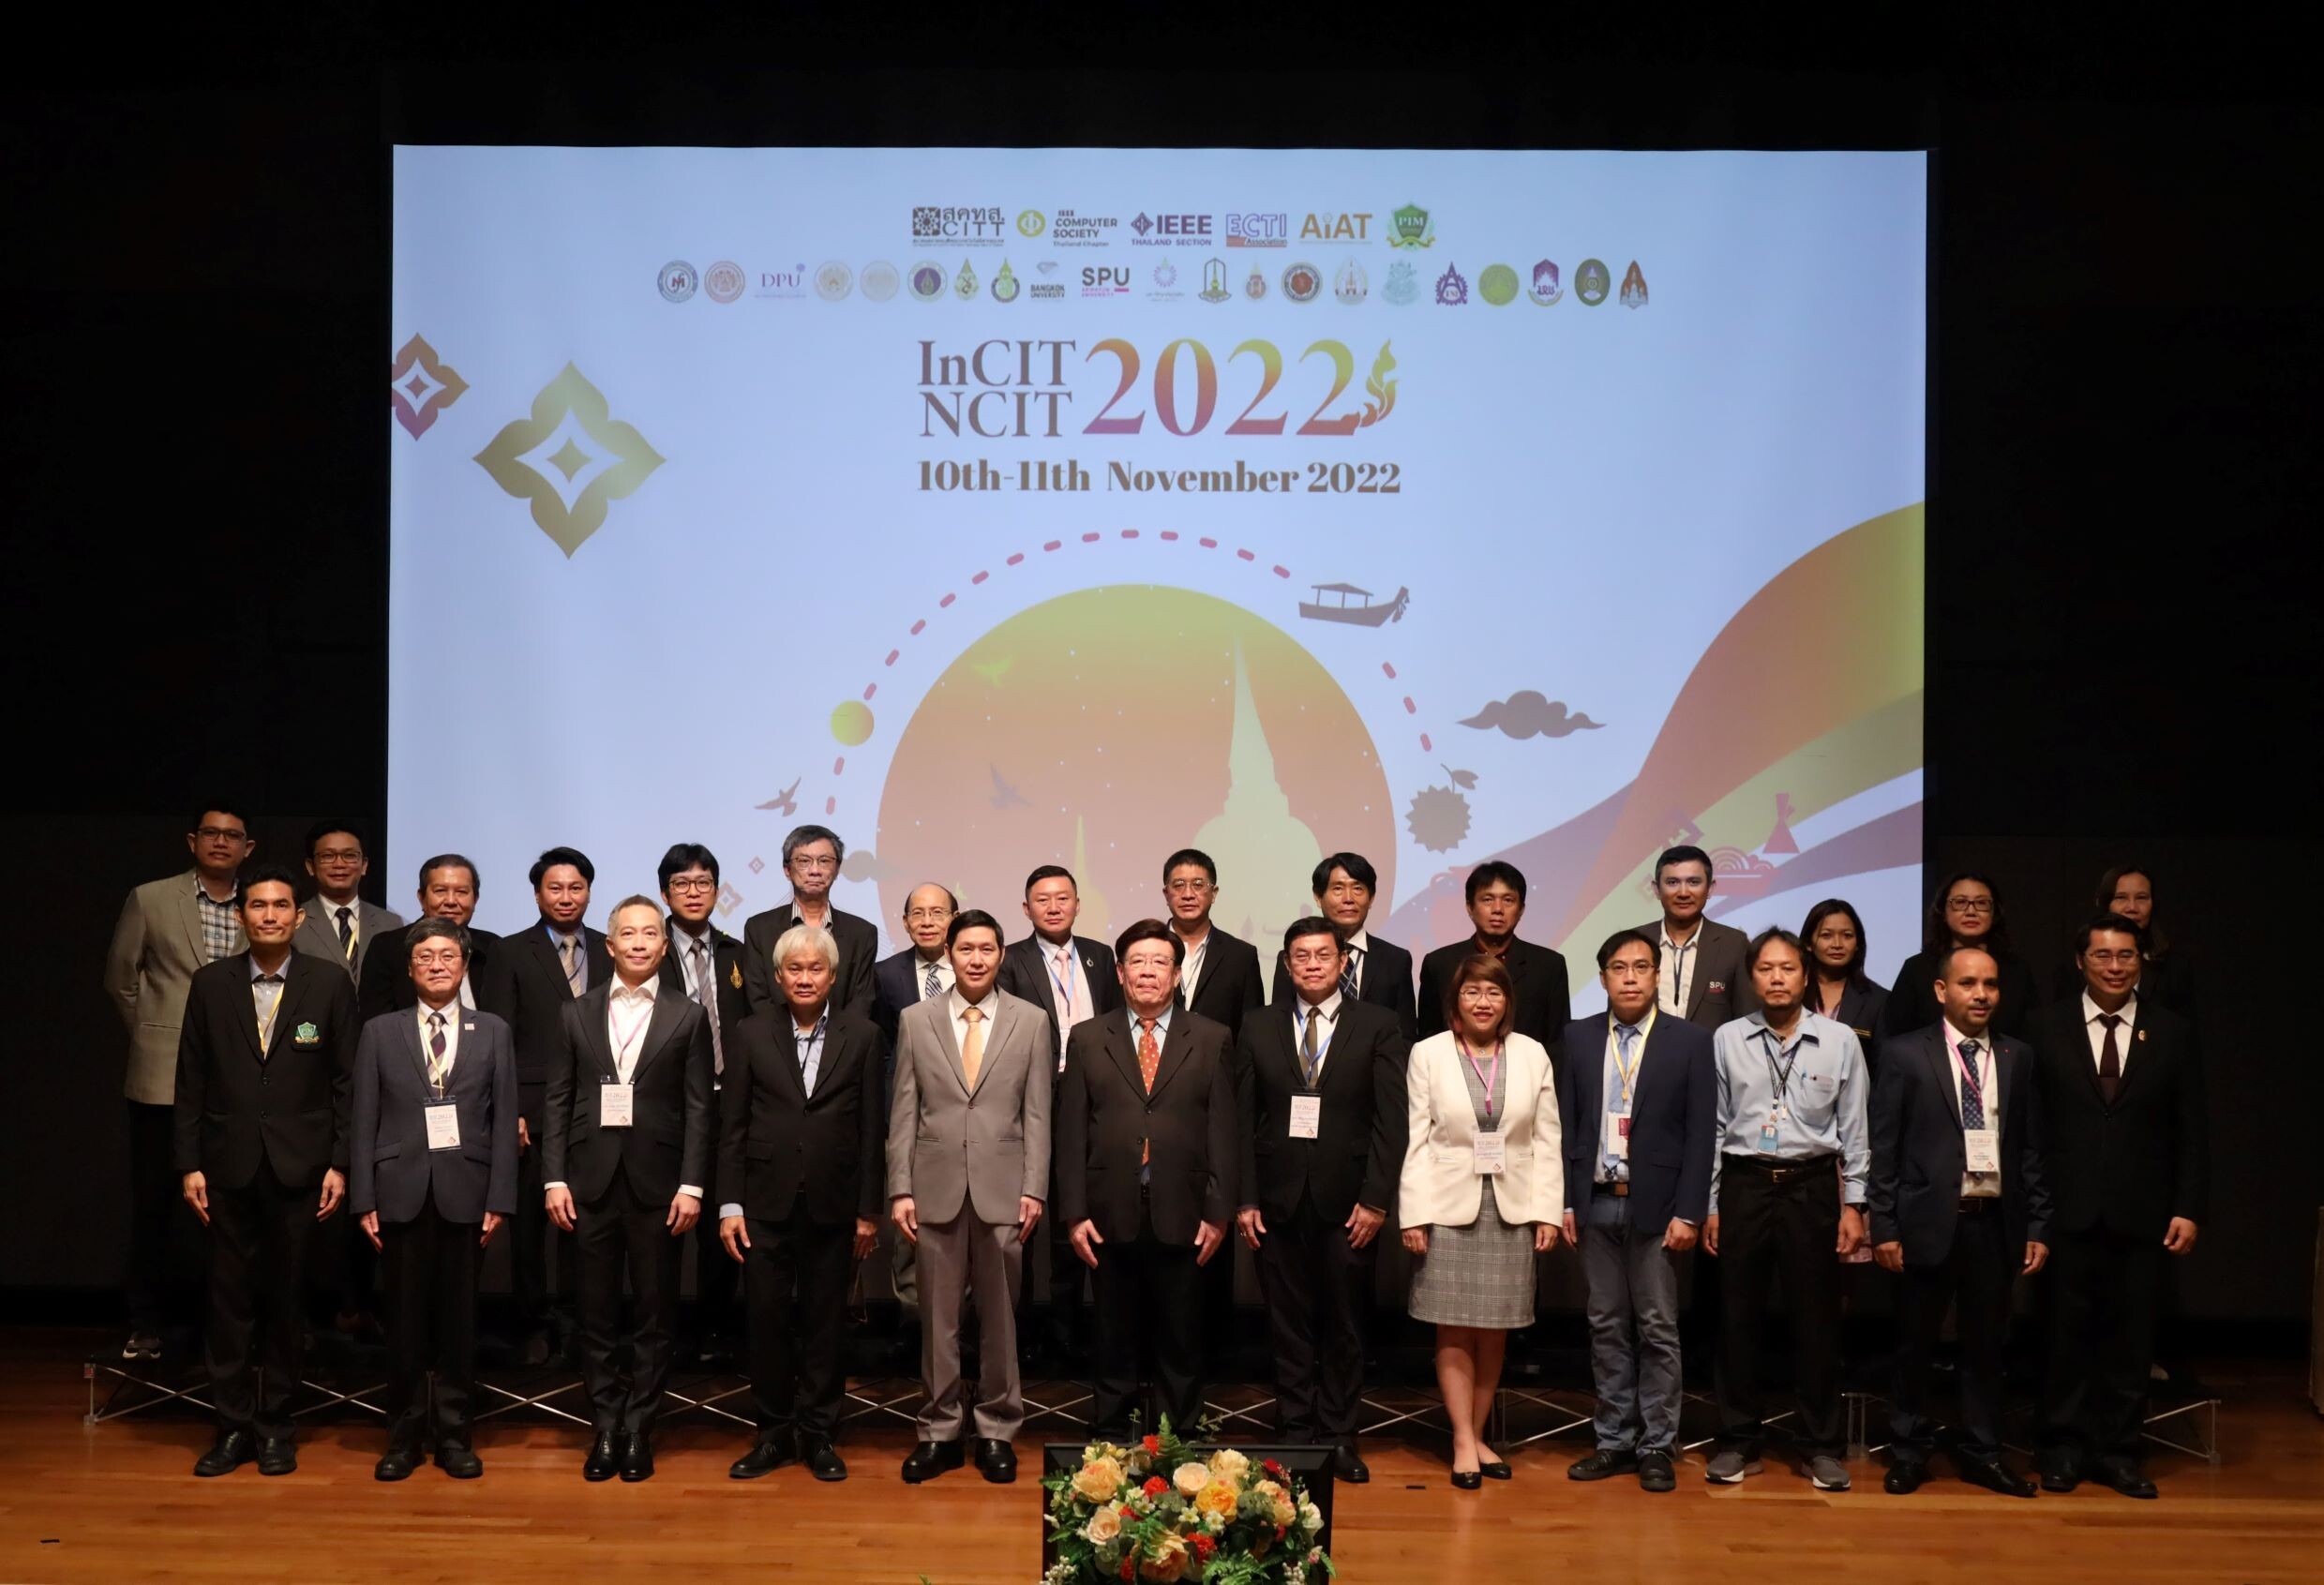 CITT จับมือ PIM และพันธมิตร จัดประชุมวิชาการระดับชาติ (NCIT 2022) ครั้งที่ 14 และระดับนานาชาติ (InCIT 2022) ครั้งที่6 ทางด้านเทคโนโลยีสารสนเทศ